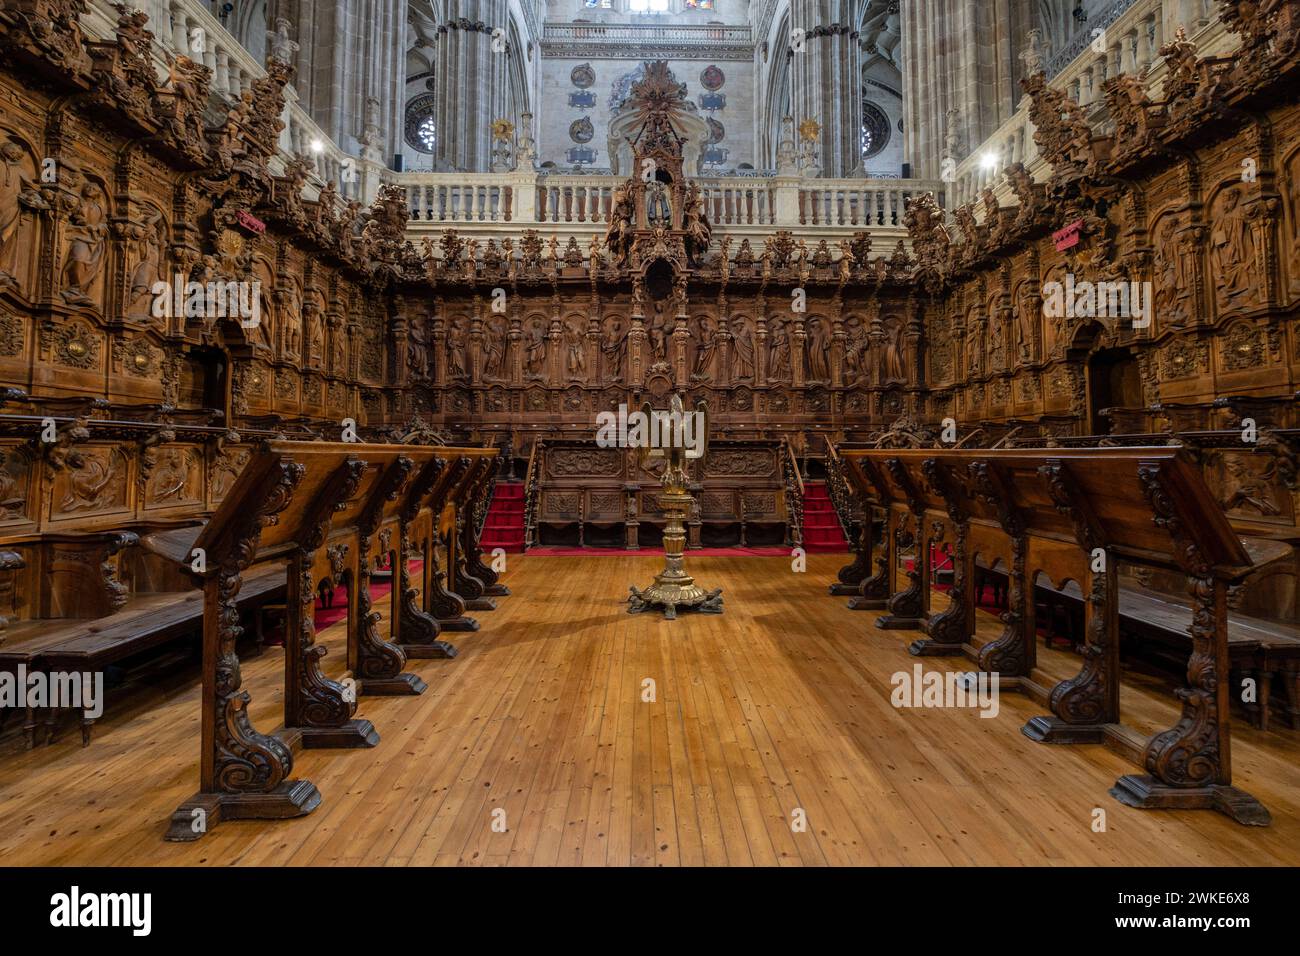 coro, Catedral de la Asunción de la Virgen, Salamanca, comunidad autónoma de Castilla y León, Spain. Stock Photo